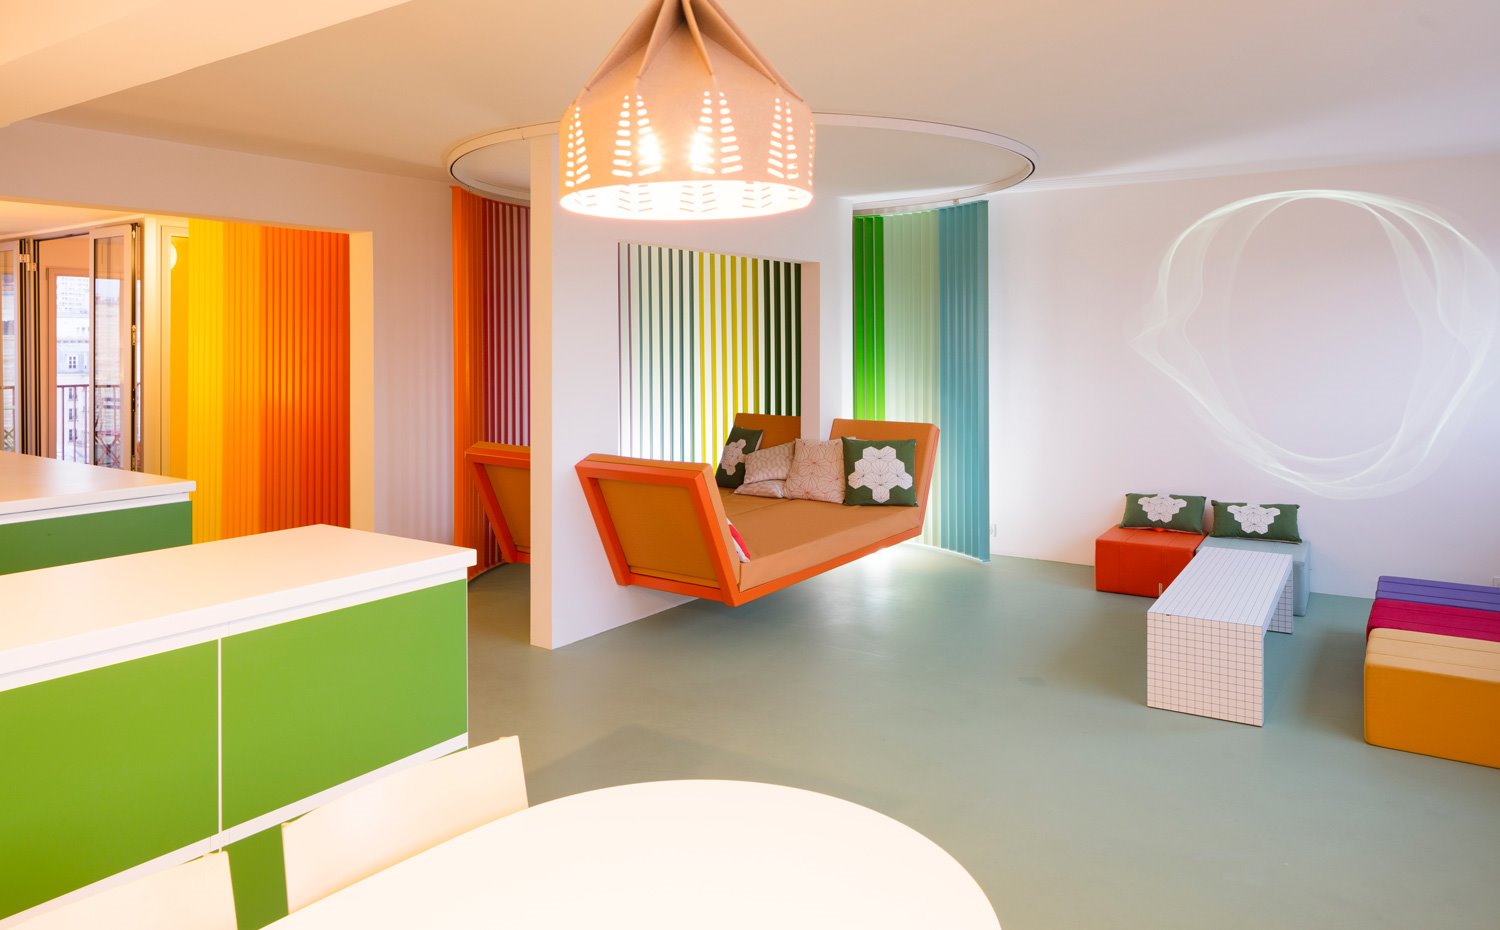 Comedor y sala de estar con sobres en blanco, muebles en verde, bancada en naranja suspendida en pared y pouf de varios colores